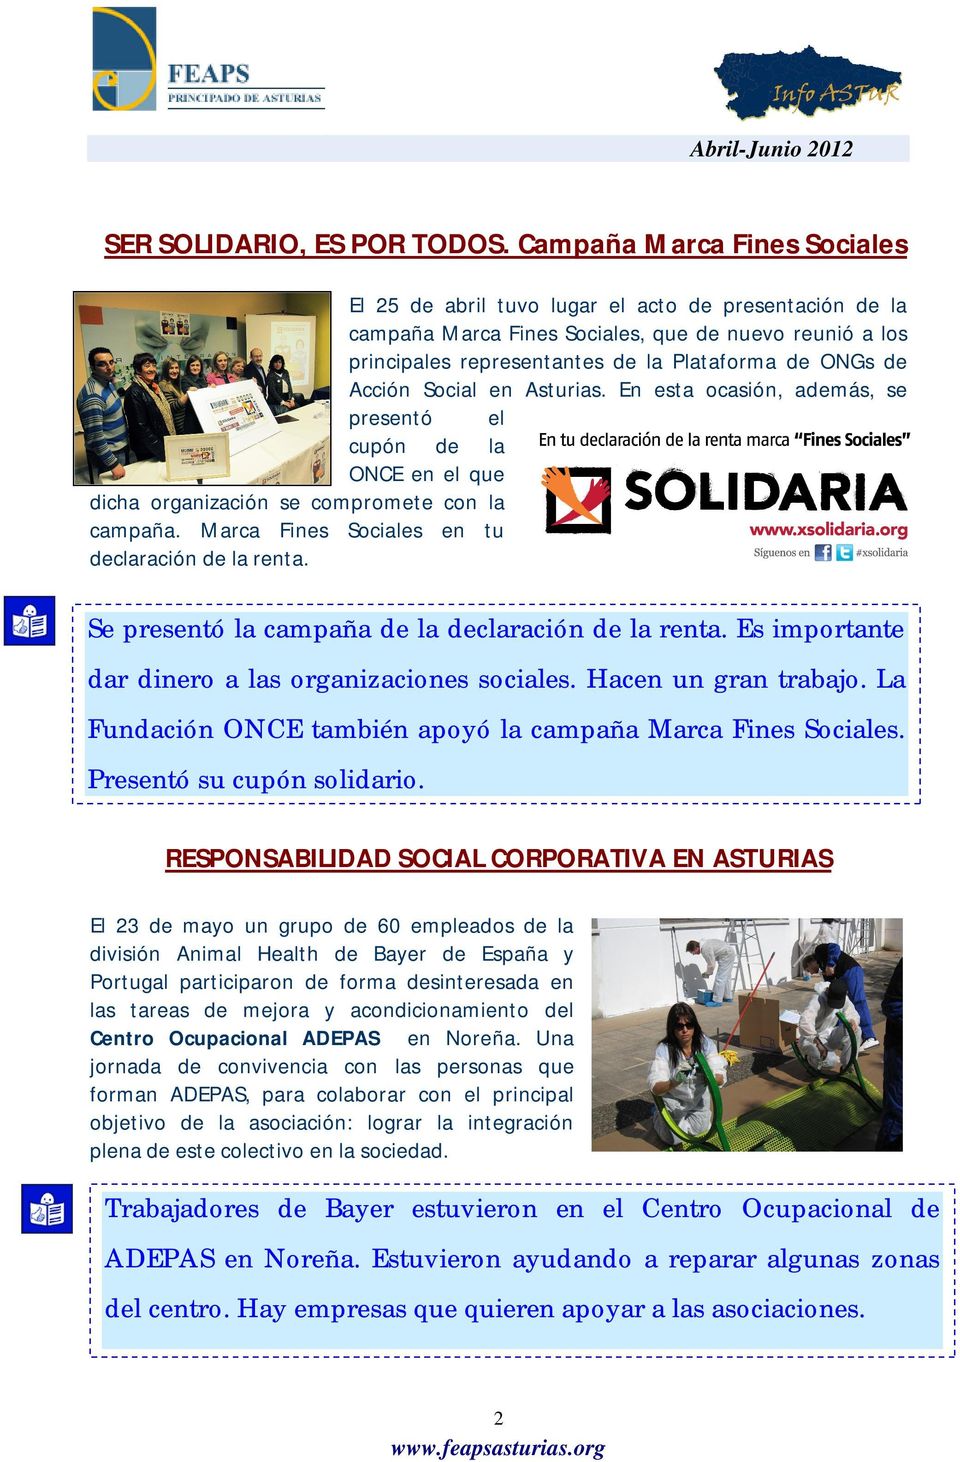 Acción Social en Asturias. En esta ocasión, además, se presentó el cupón de la ONCE en el que dicha organización se compromete con la campaña. Marca Fines Sociales en tu declaración de la renta.